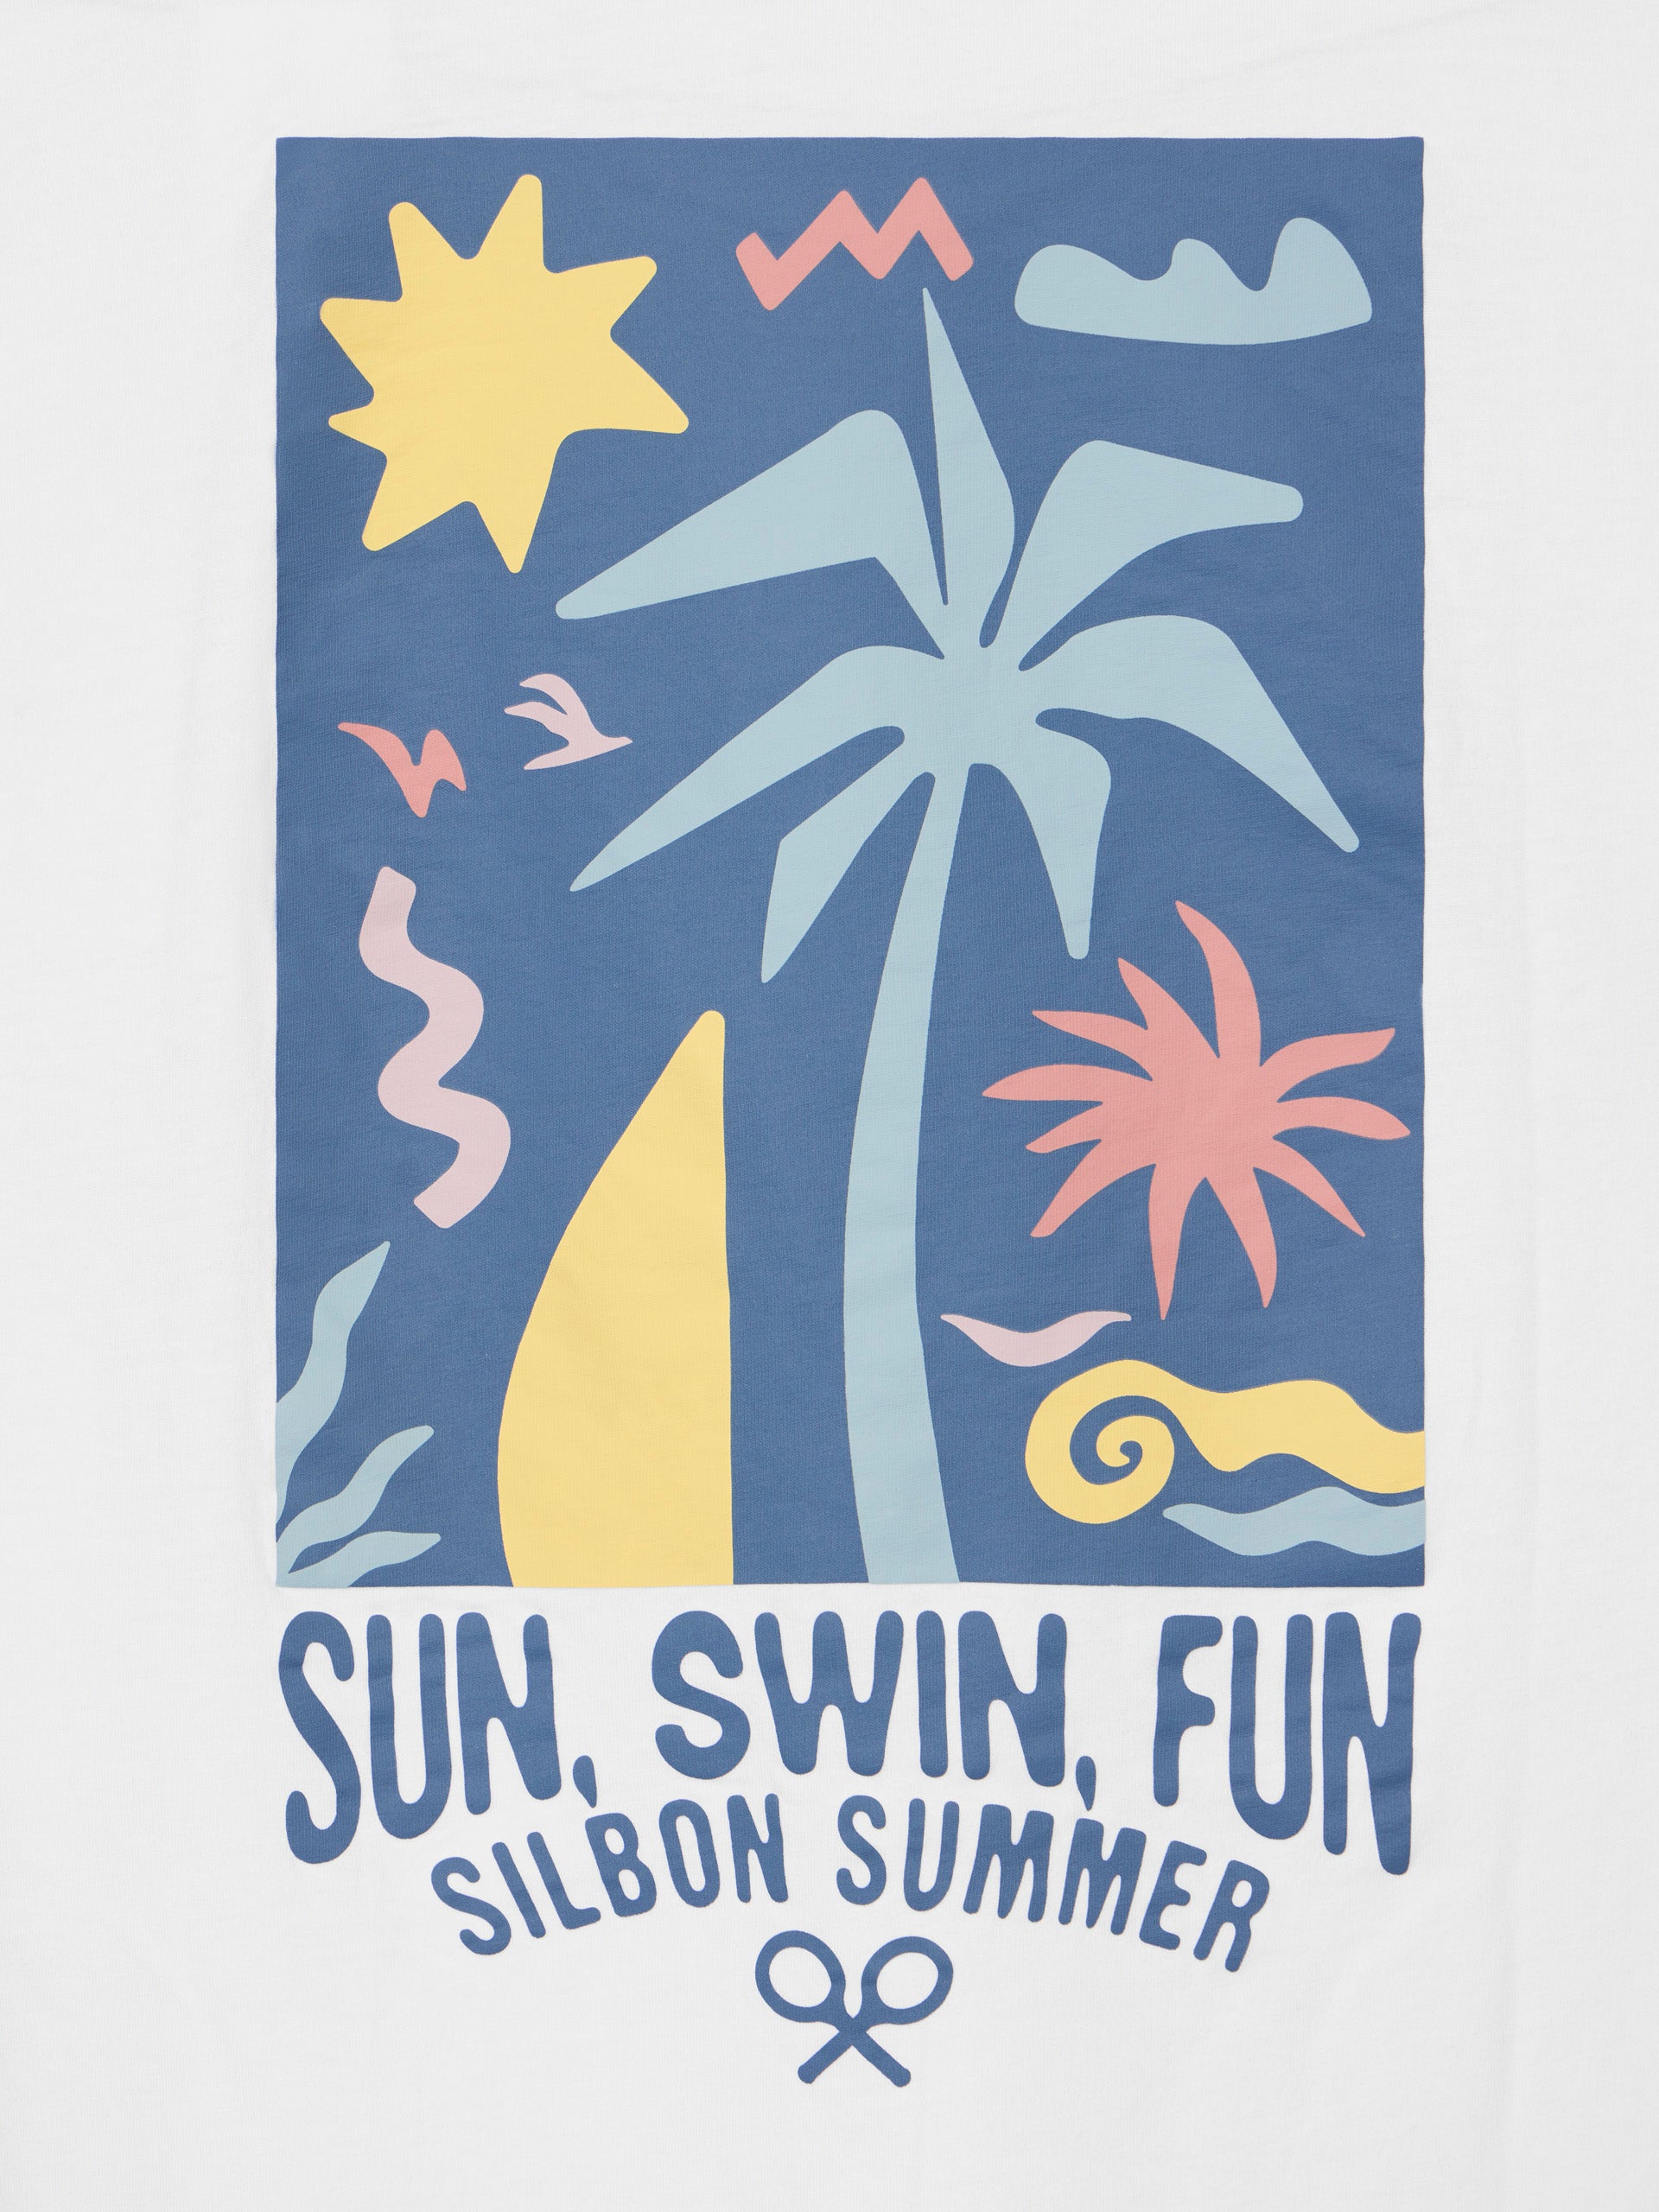 Camiseta sun swim fun blanca